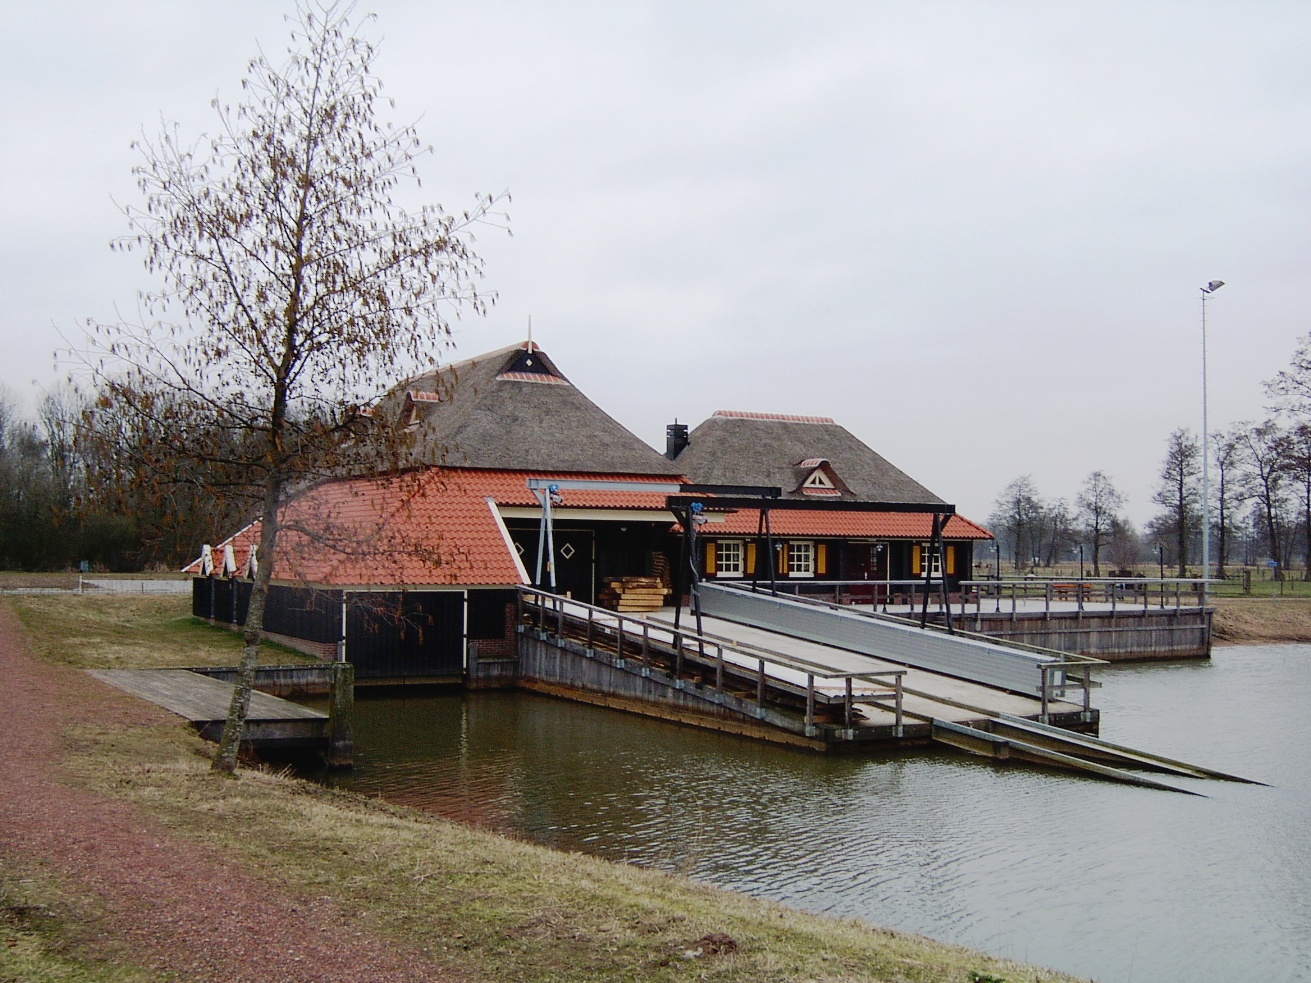 Boatyard at Enter, Netherlands